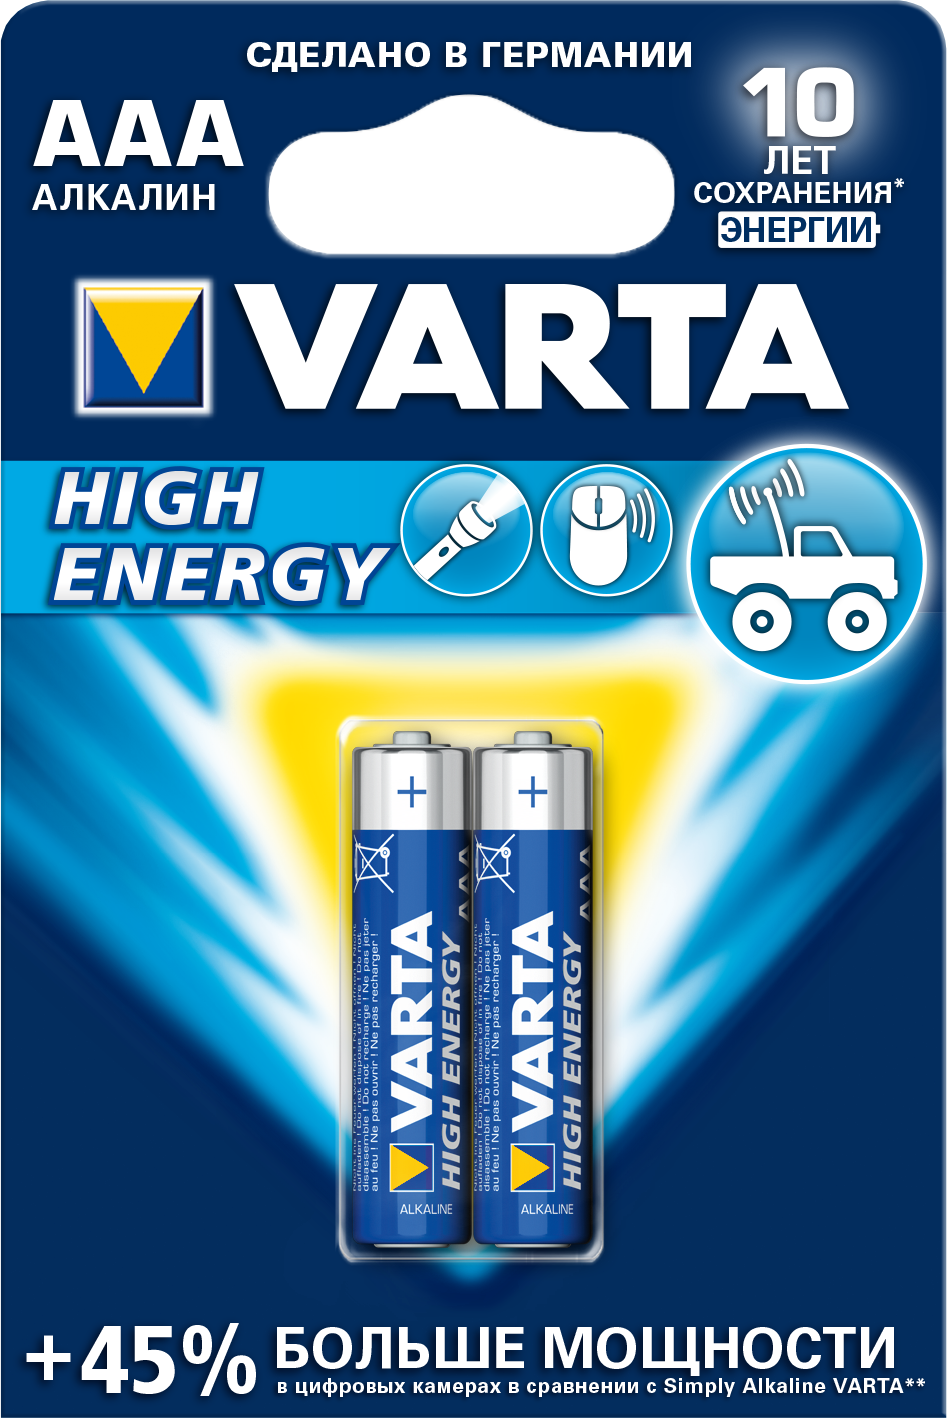 Батарейка Varta HIGH ENERGY AAA БЛ. 2,KISPIS батарейка varta energy 9v 4122229411